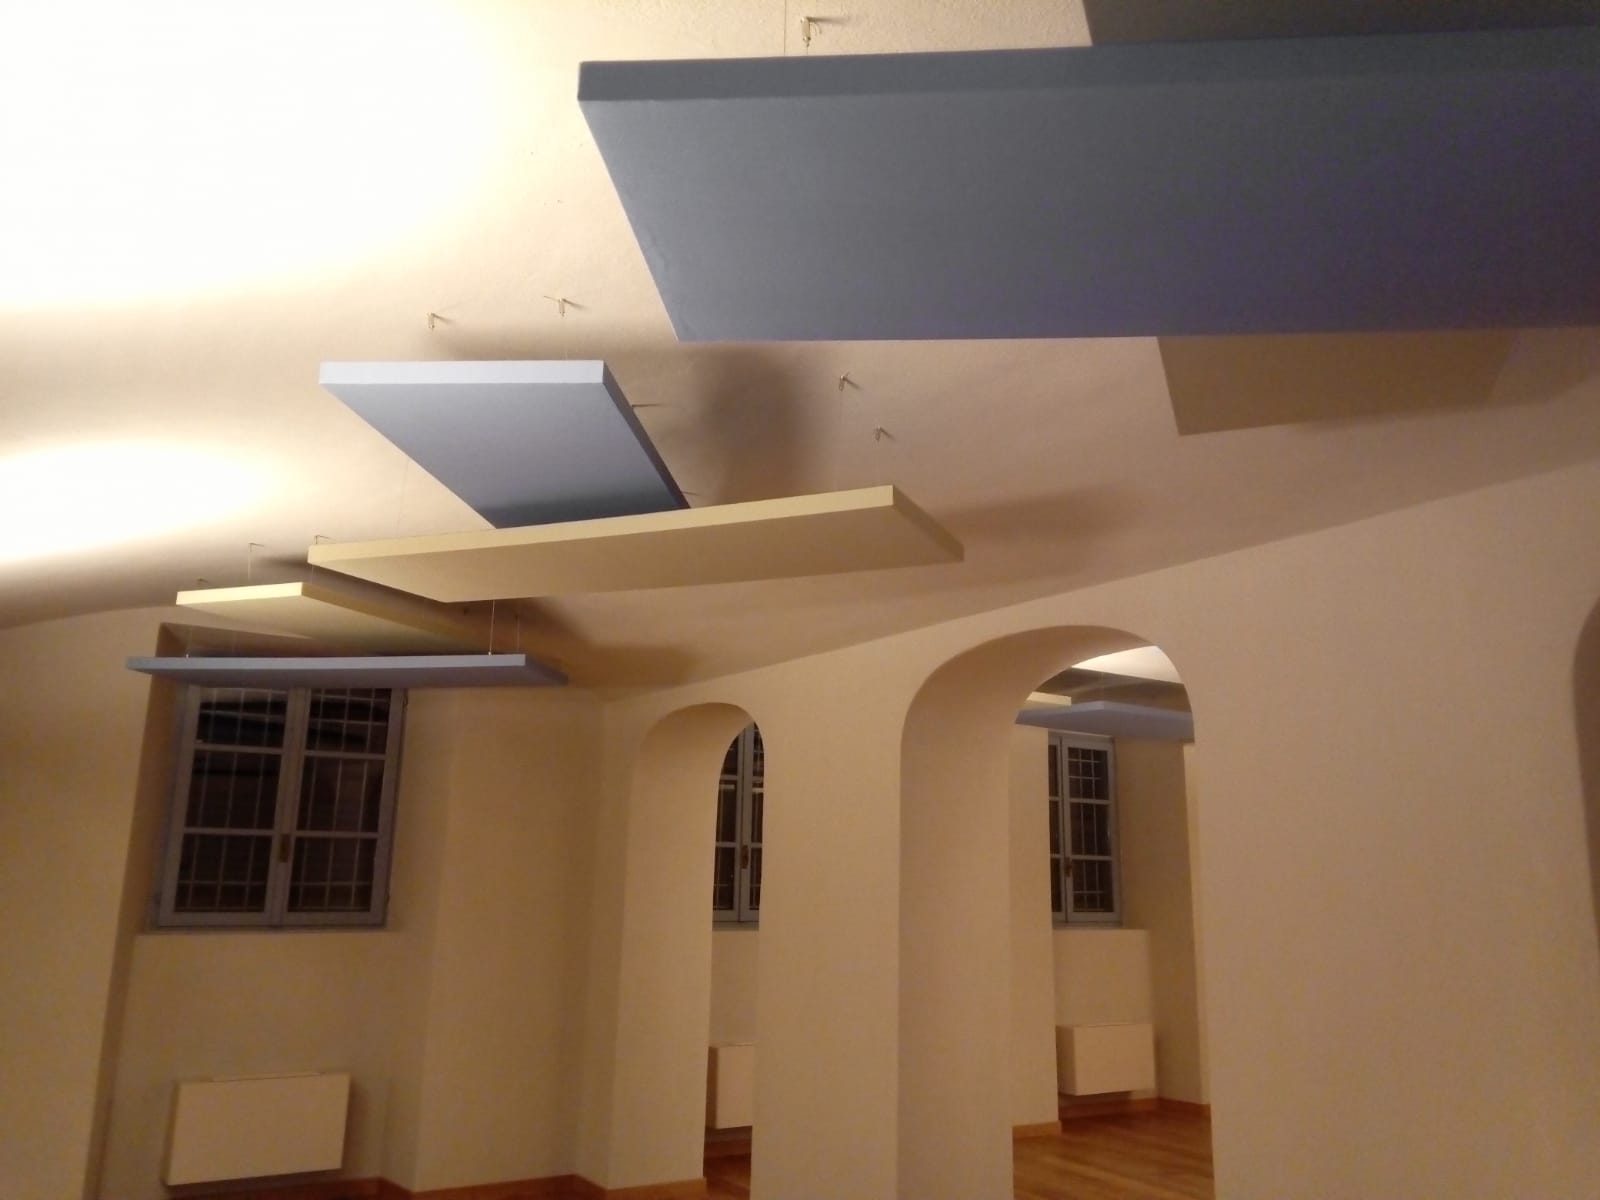 Miglioramento acustica uffici e spazi commerciali con pannelli fonoassorbenti bianchi e blu